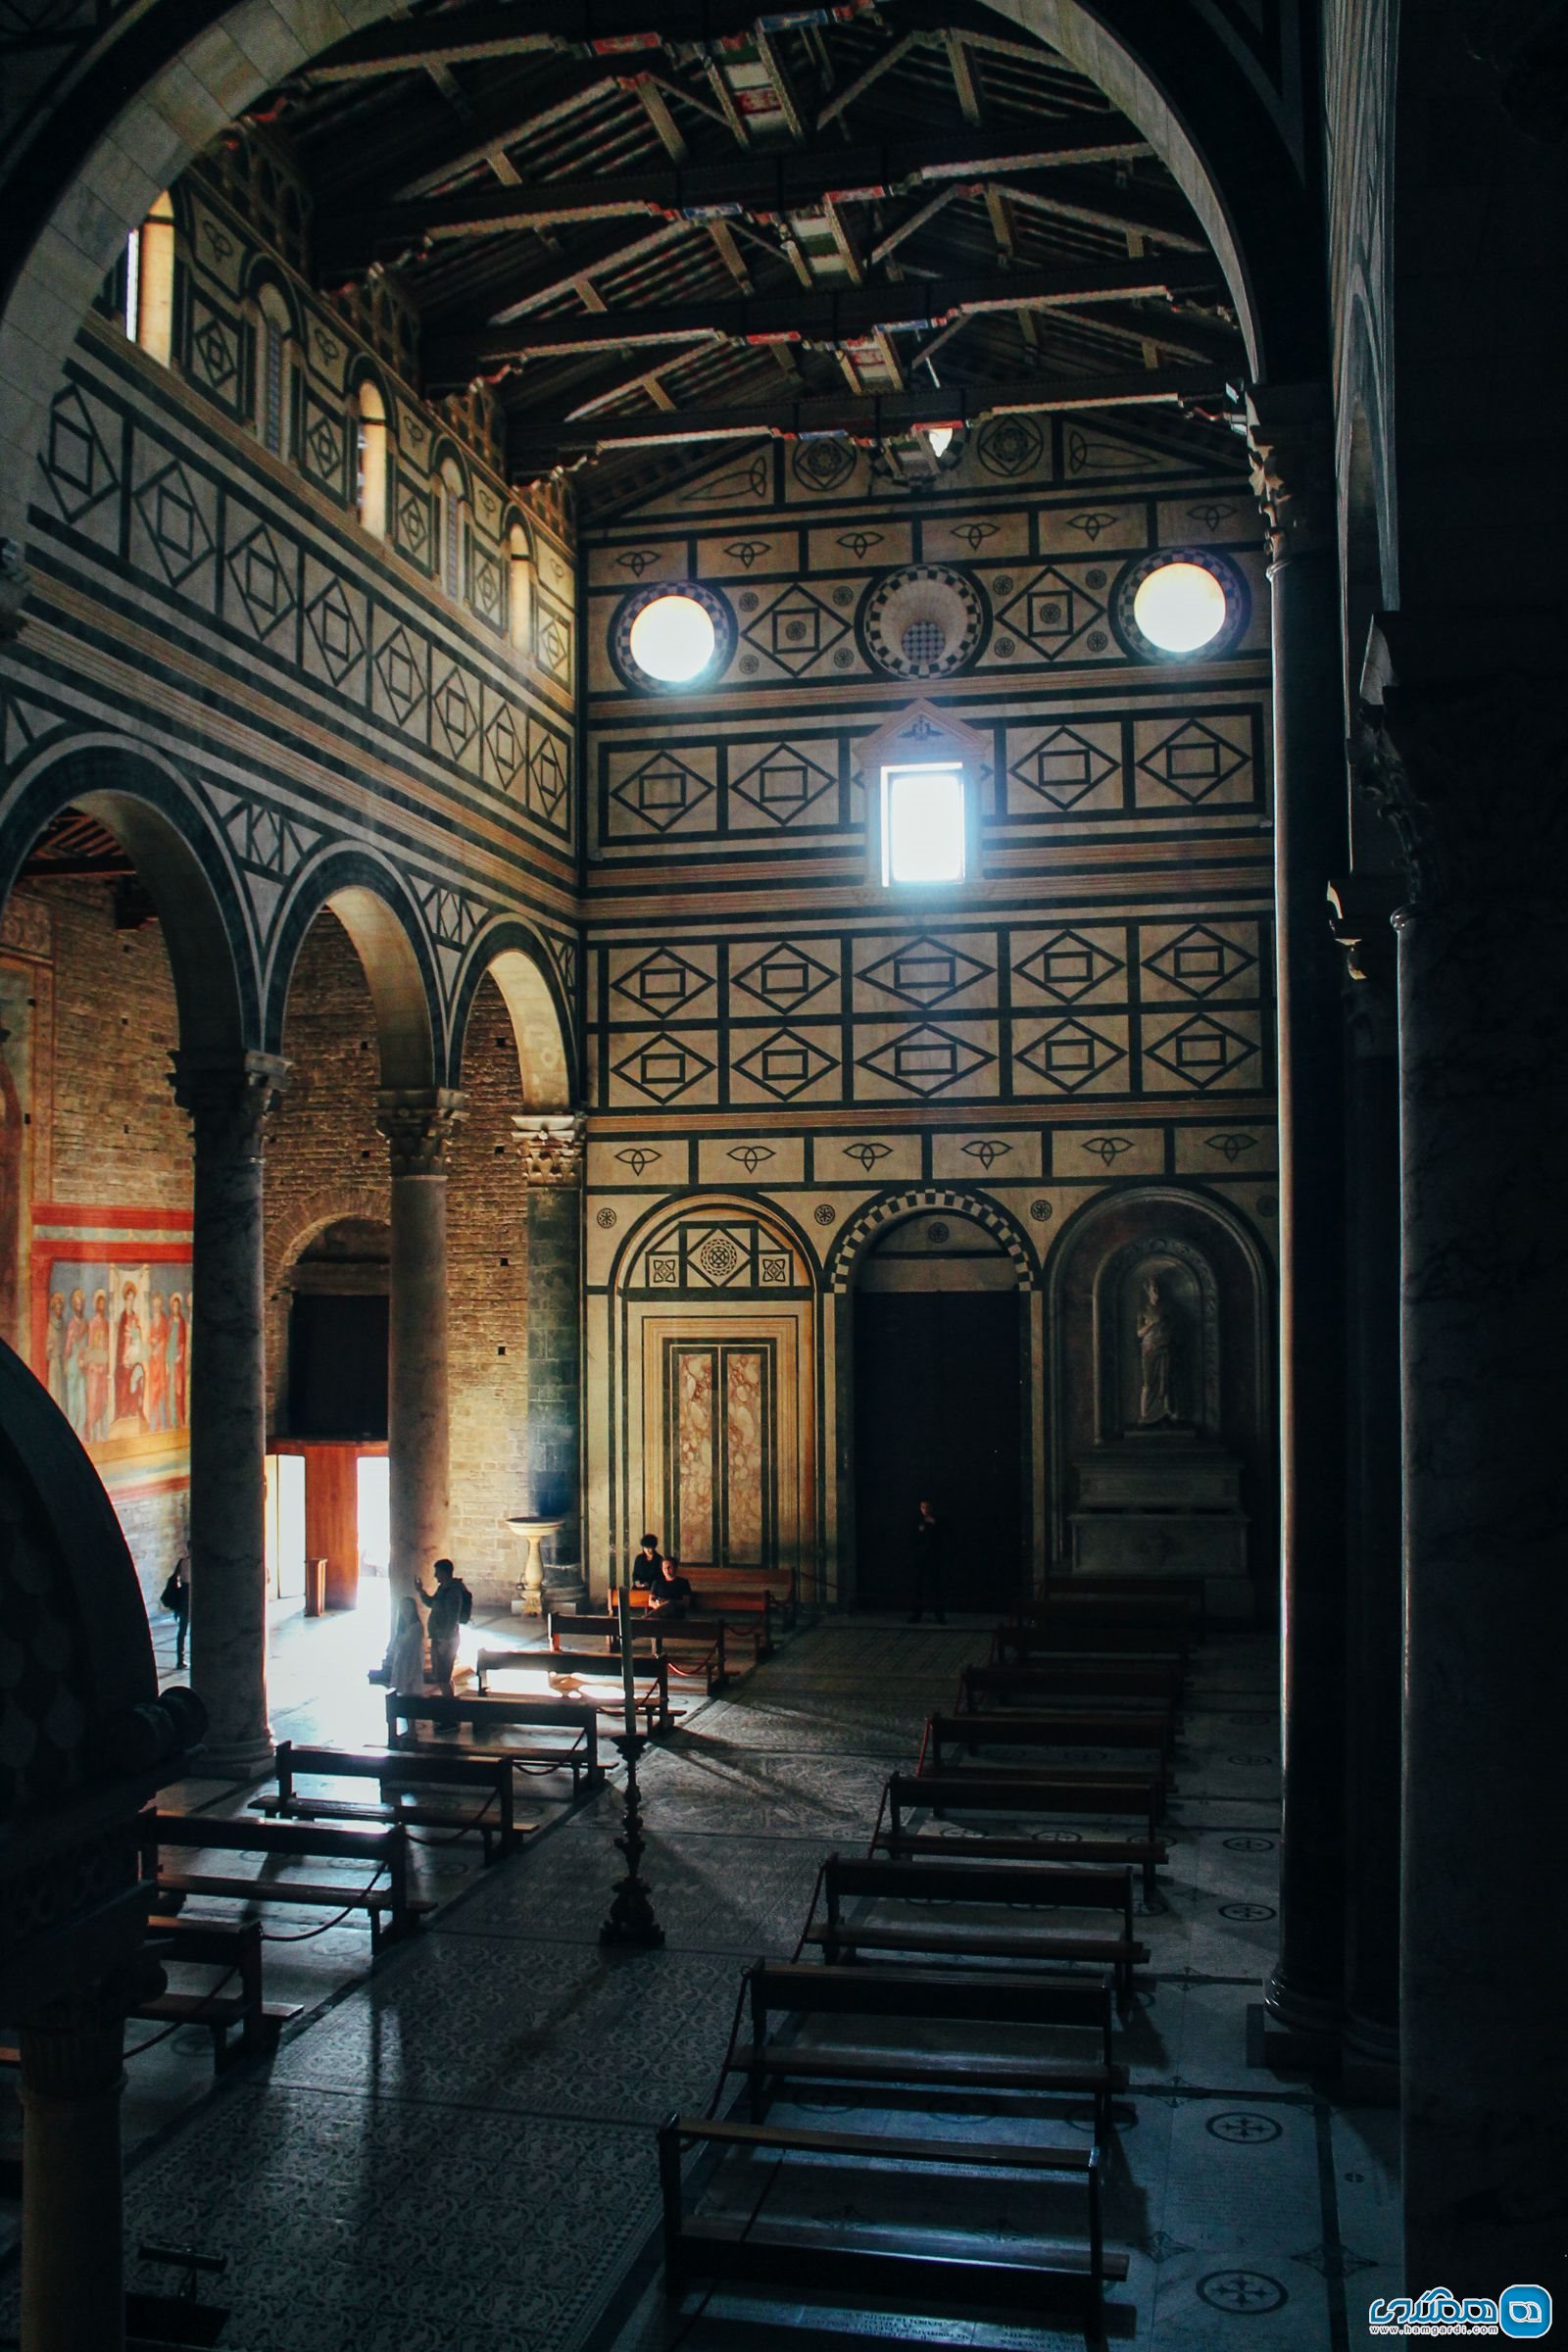 دانستنیهای سفر به ایتالیا | در مکان های مذهبی لباس های پوشیده بپوشید